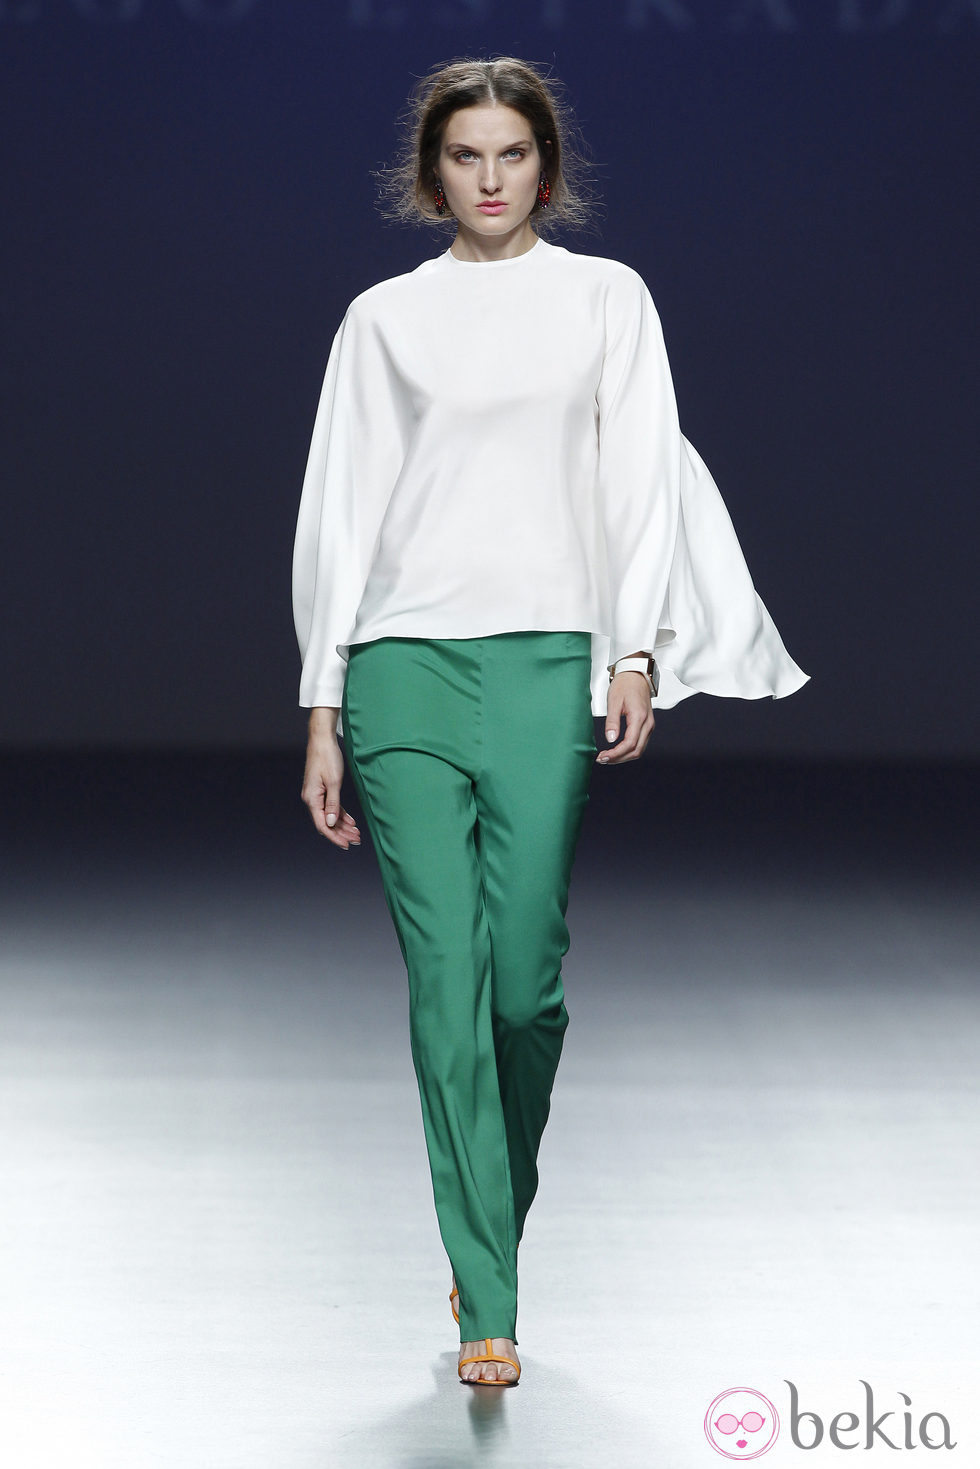 Pantalón verde de la colección primavera/verano 2014 de Diego Estrada en el EGO Madrid Fashion Week